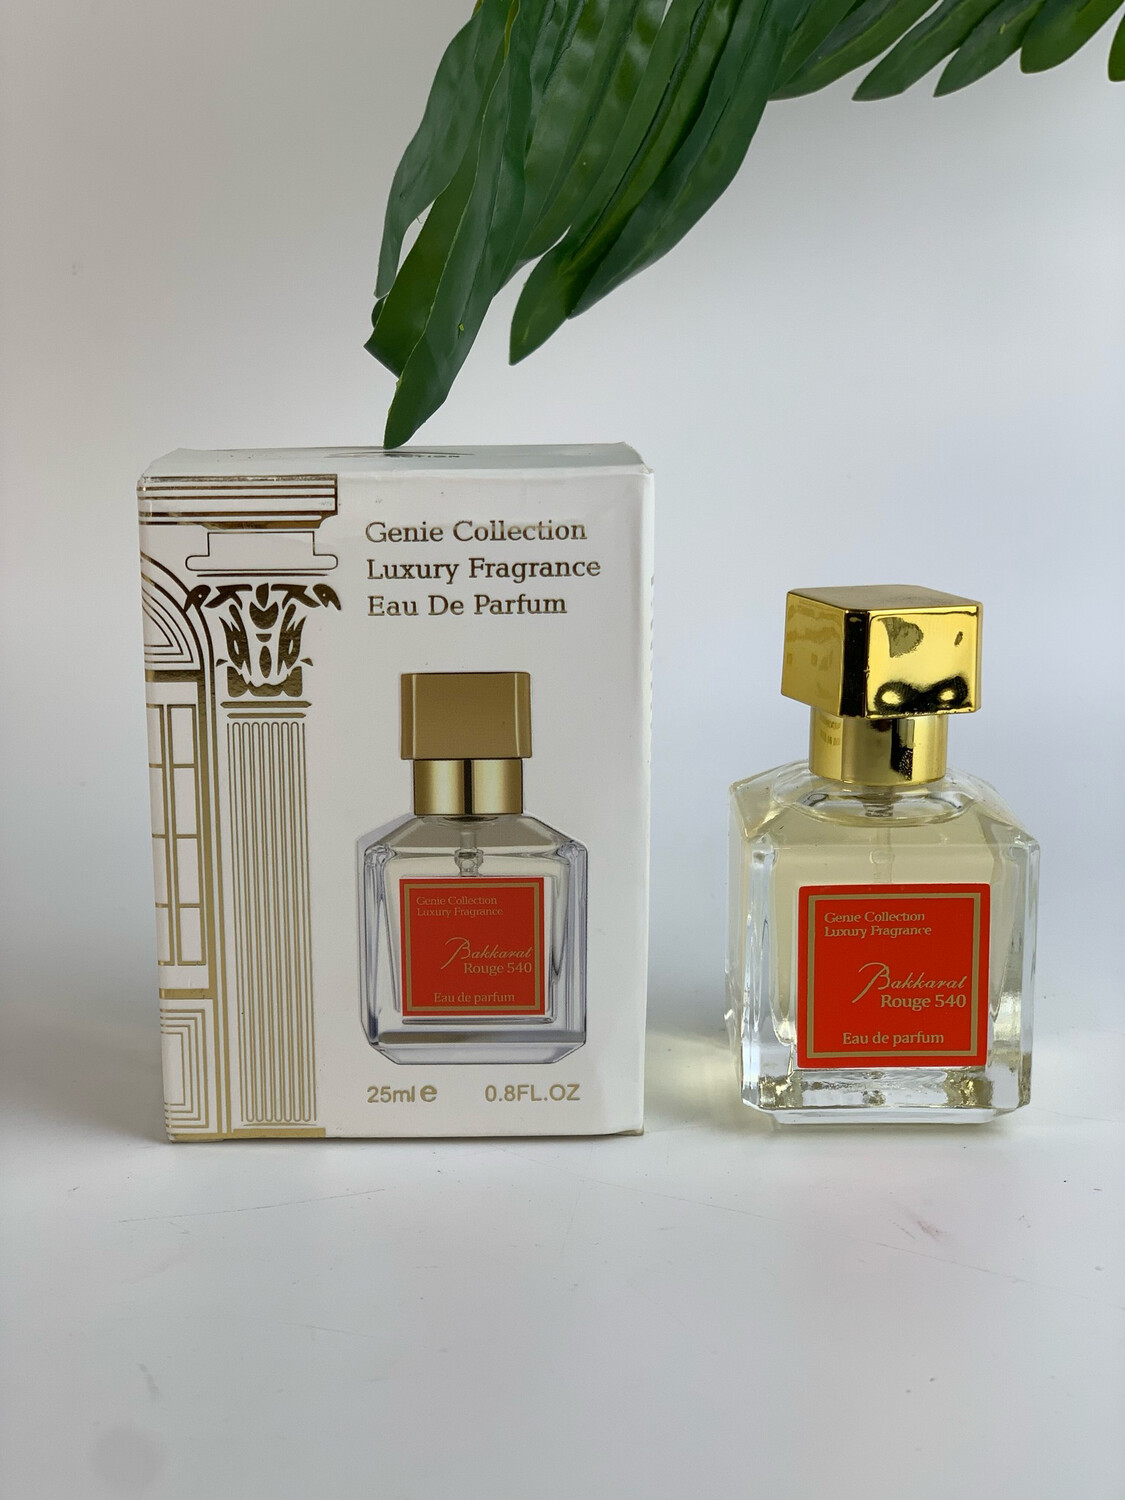 Bakkarat Rouge 540 Perfume